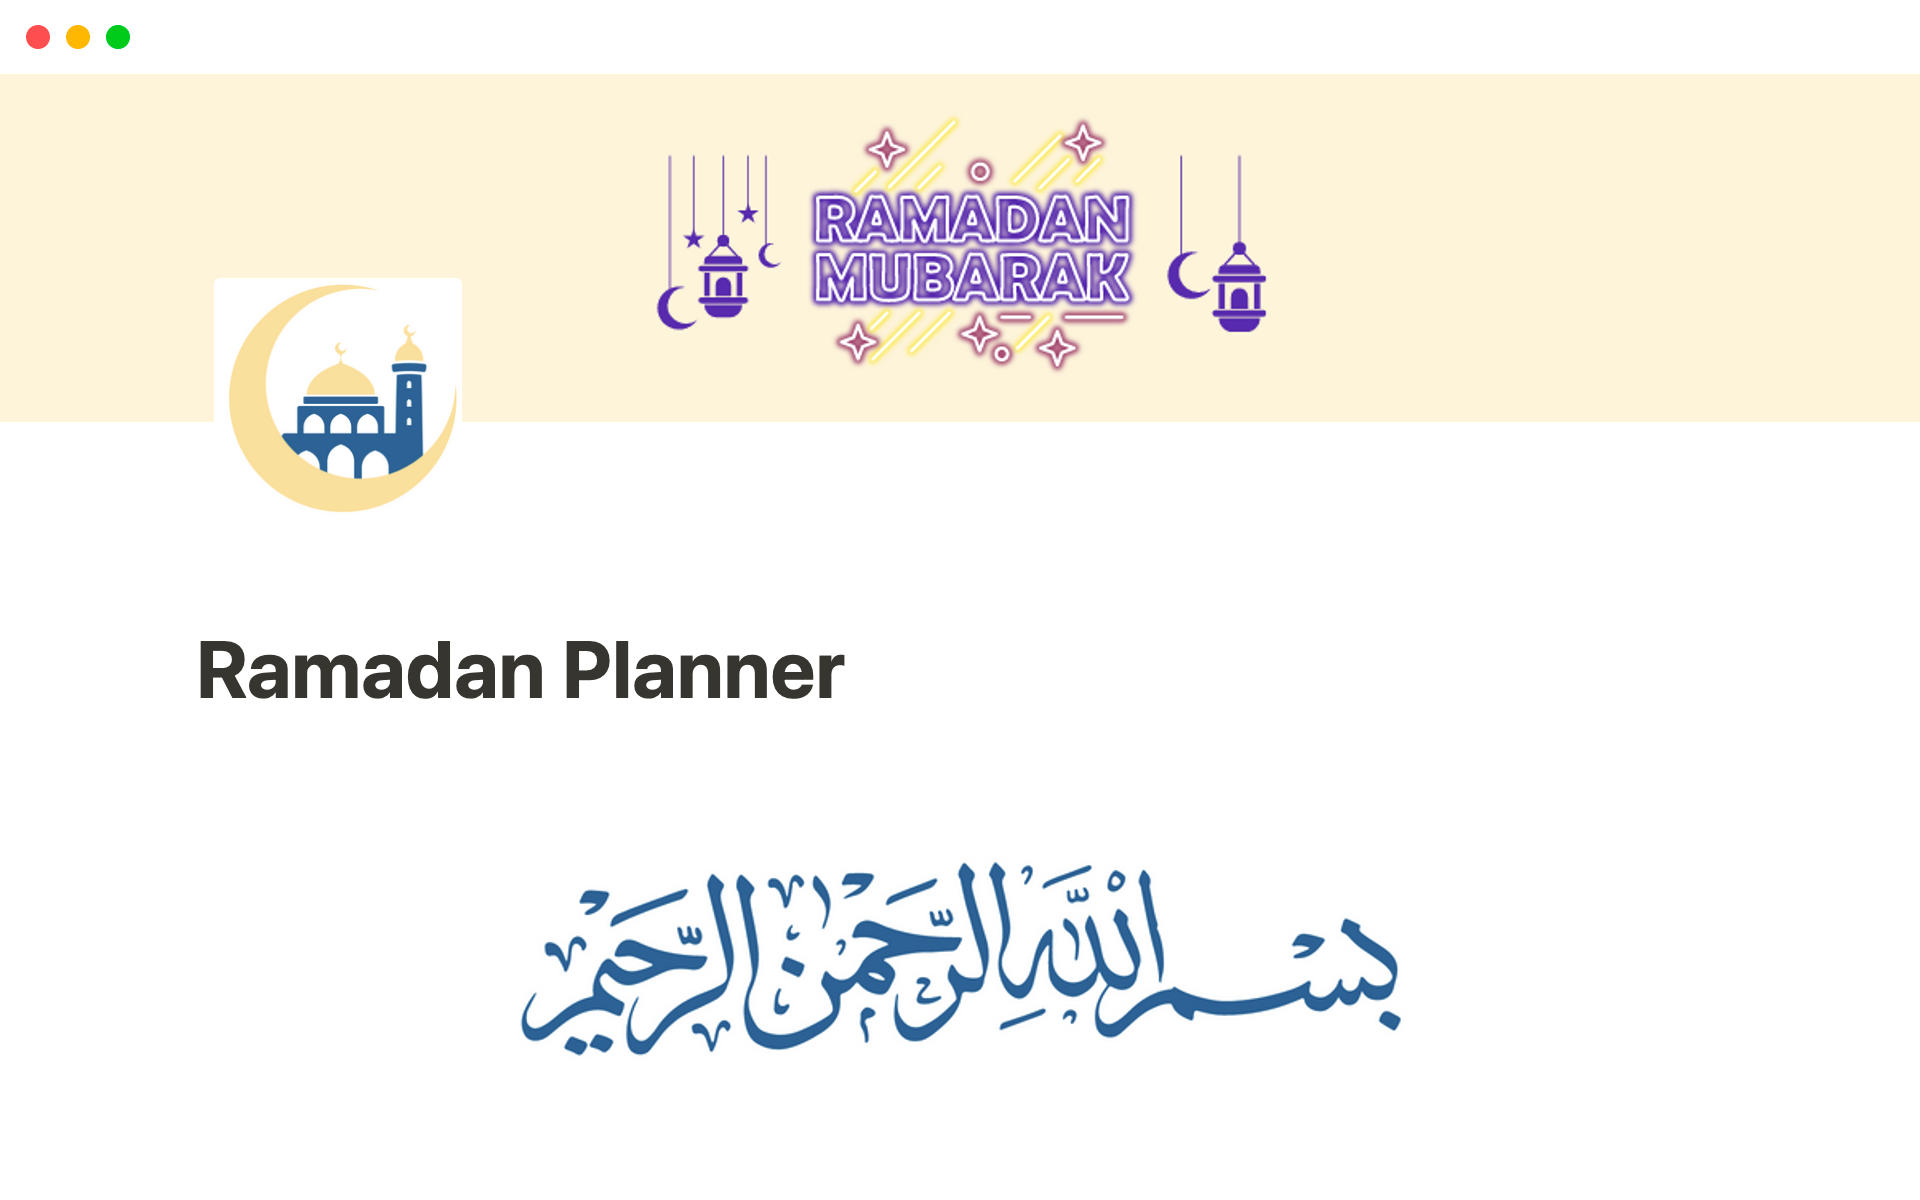 Aperçu du modèle de Ramadan Planner